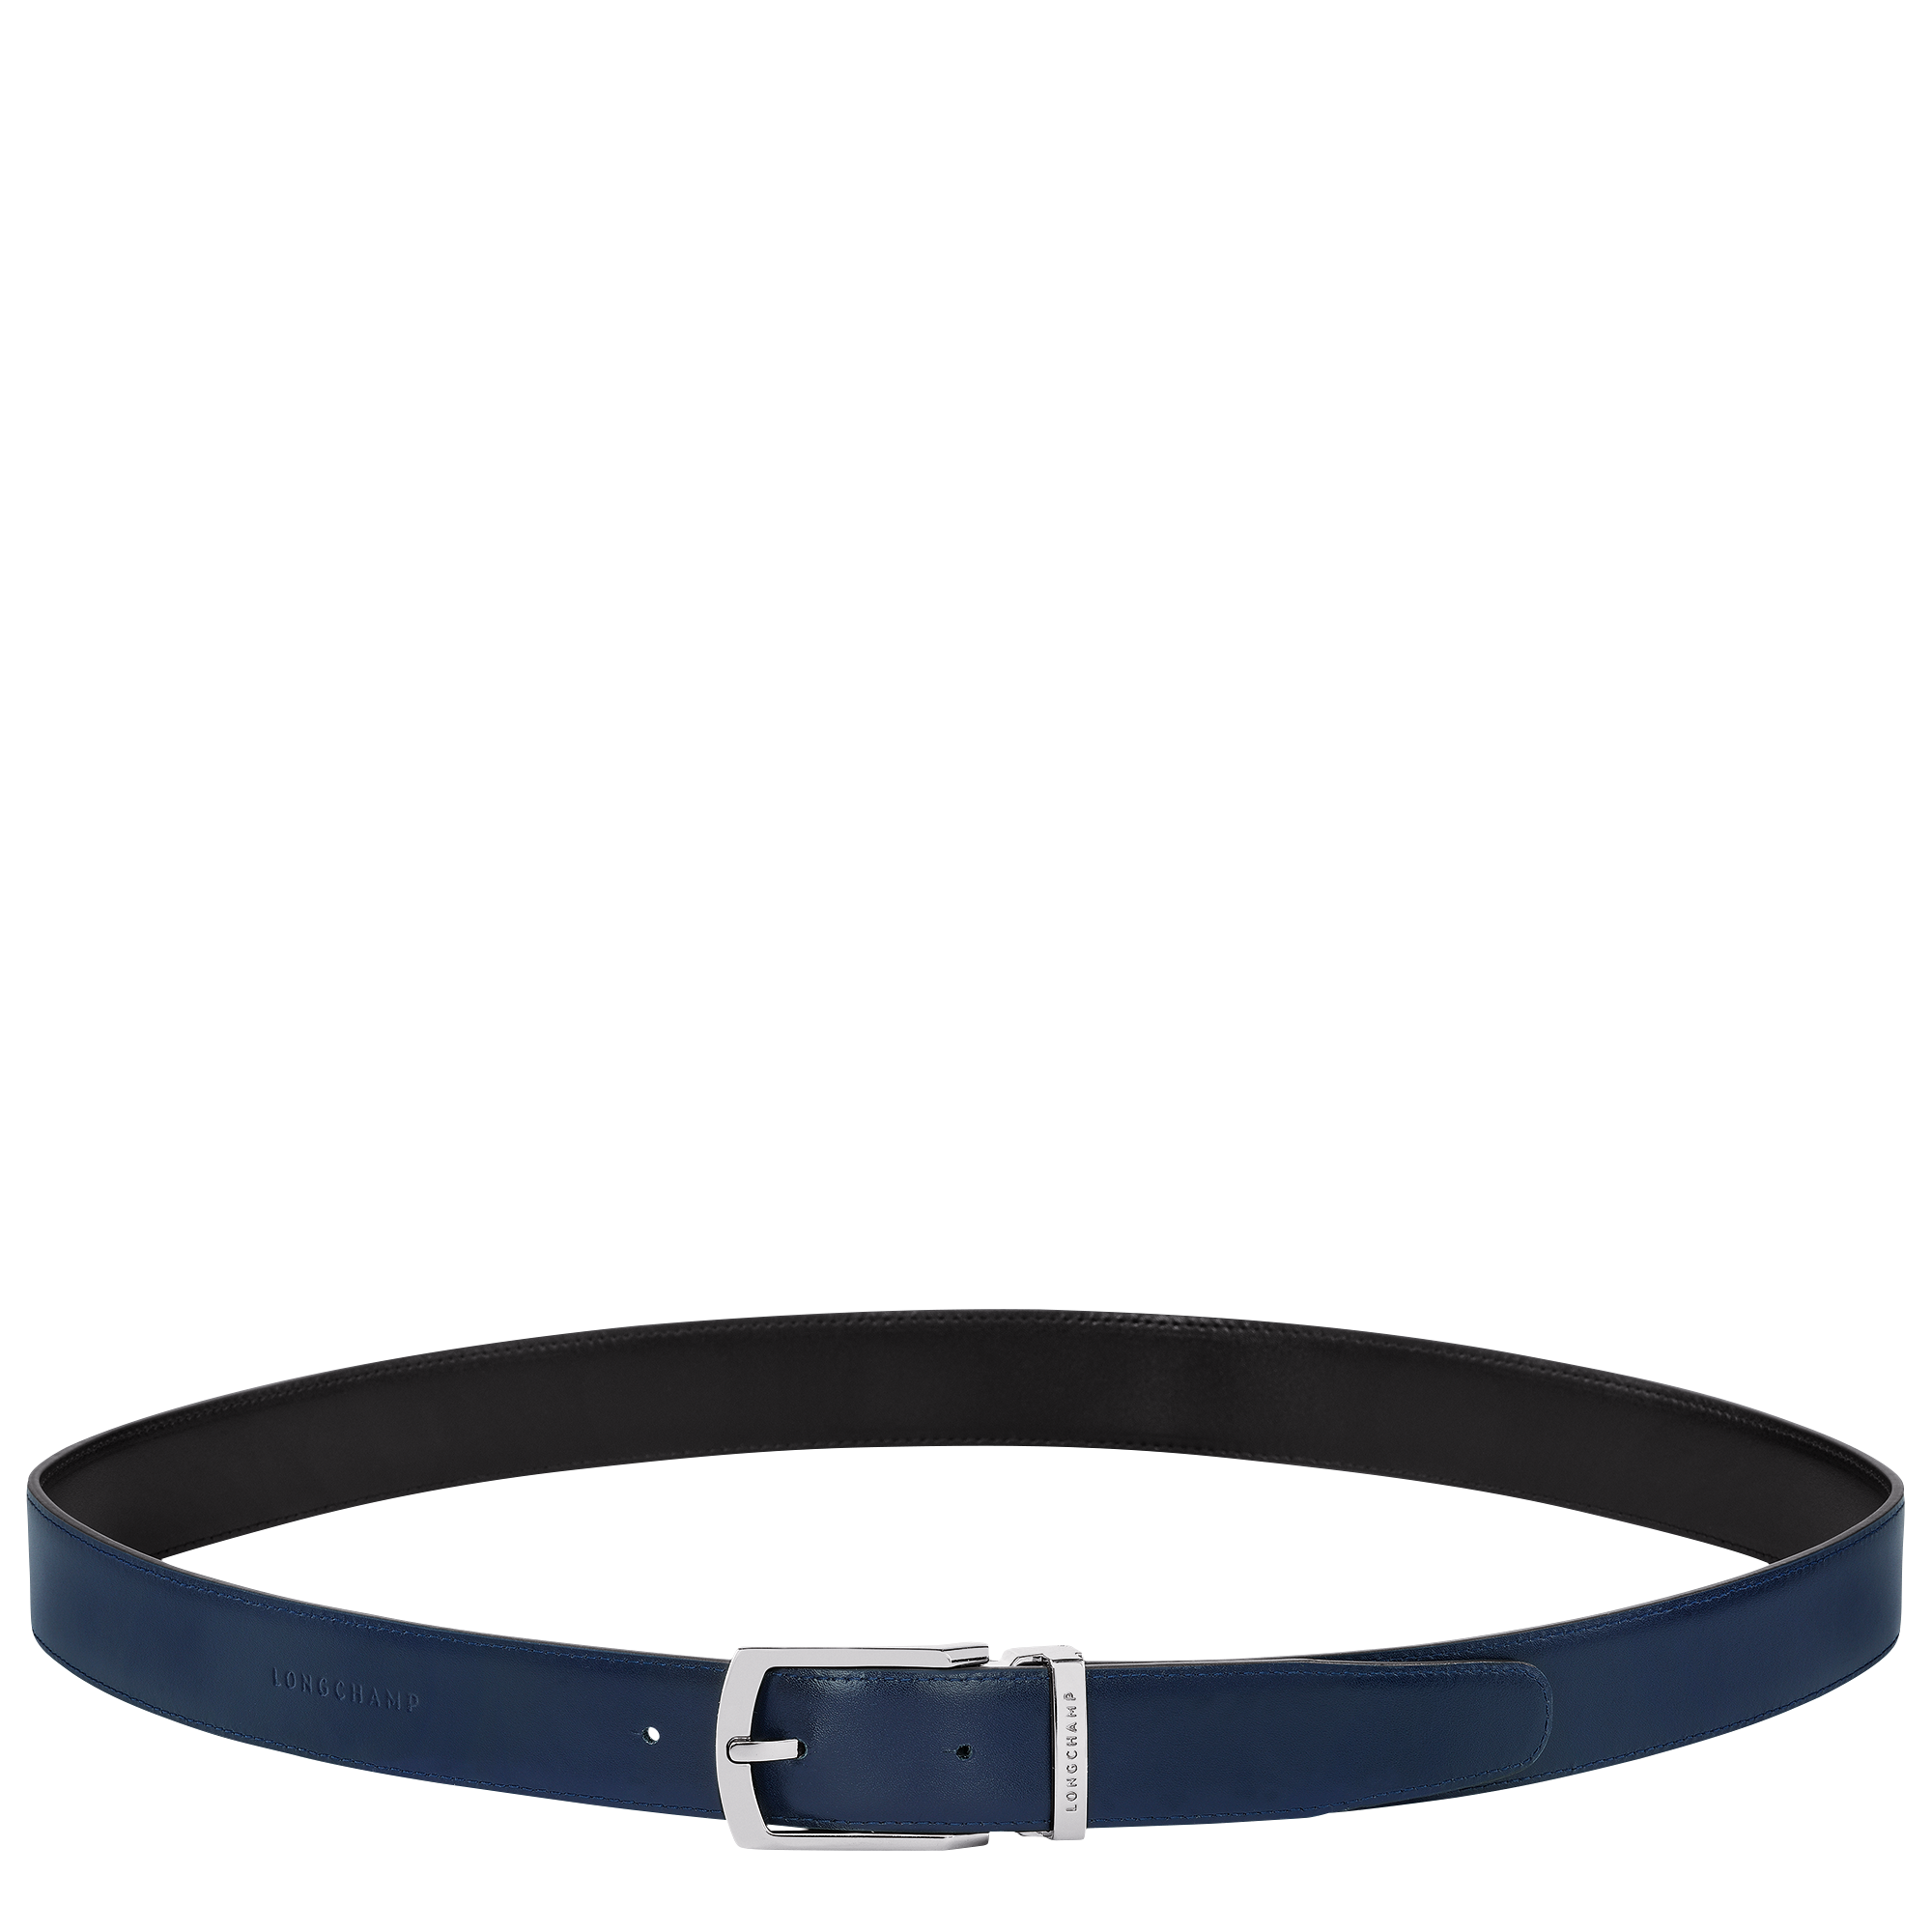 Delta Box Men's belt, Black/Navy